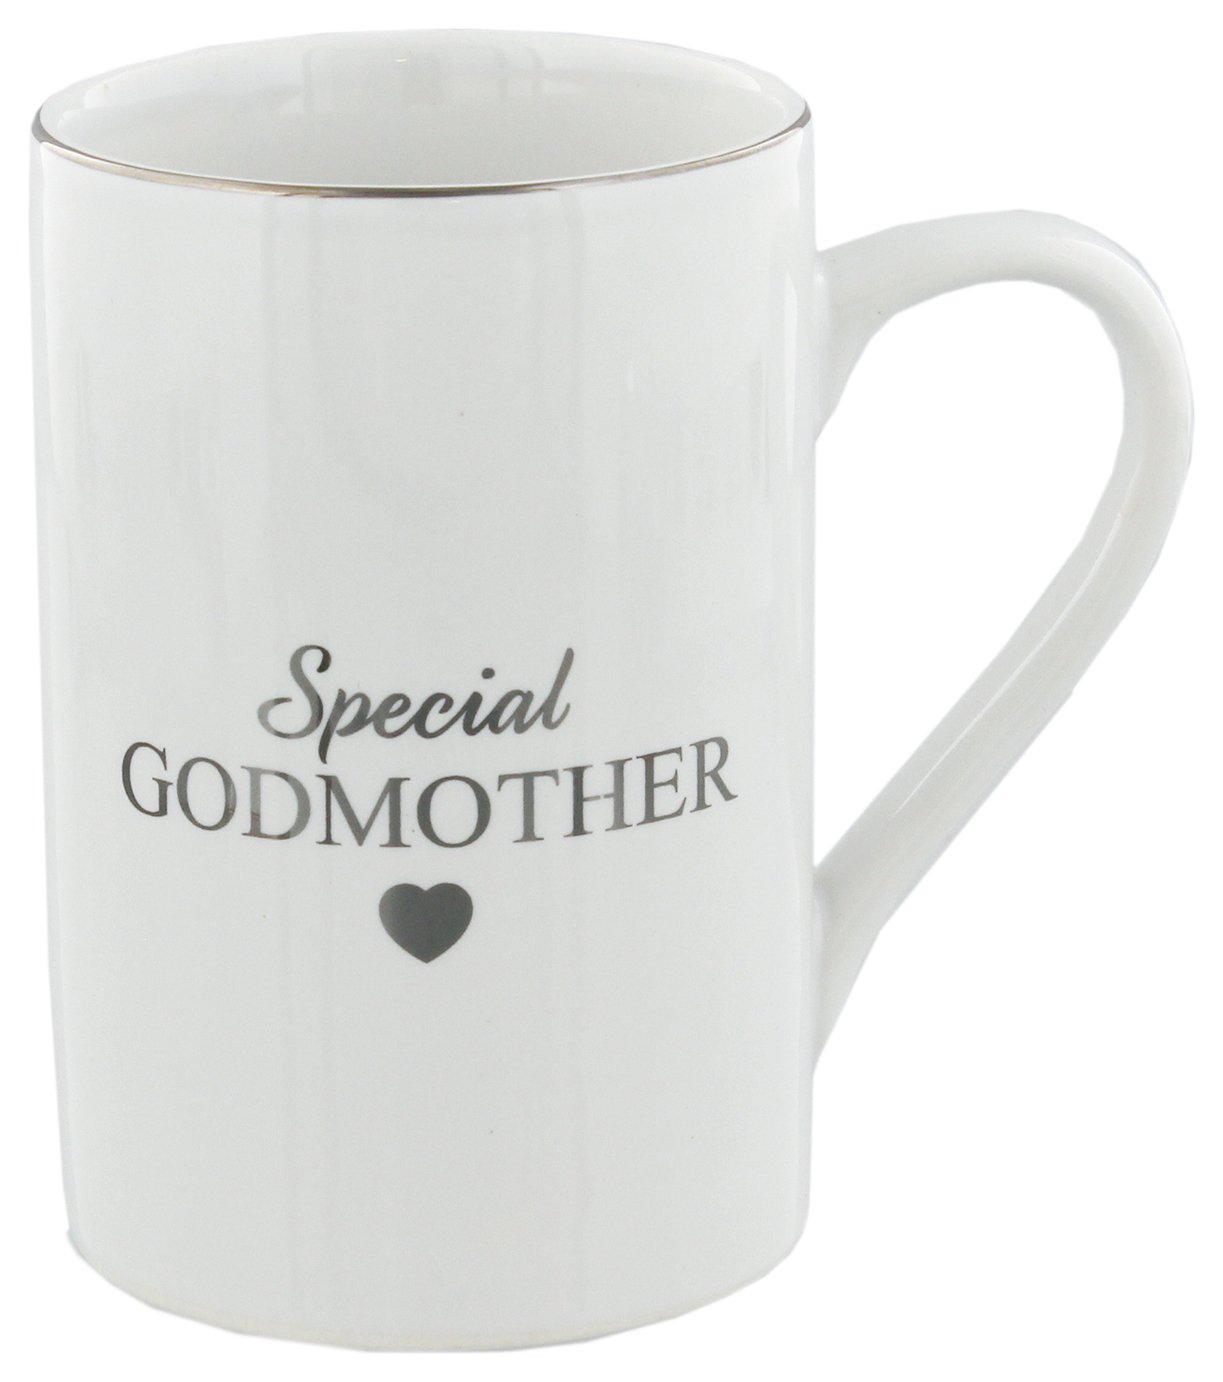 Ceramic Special Godmother Mug review